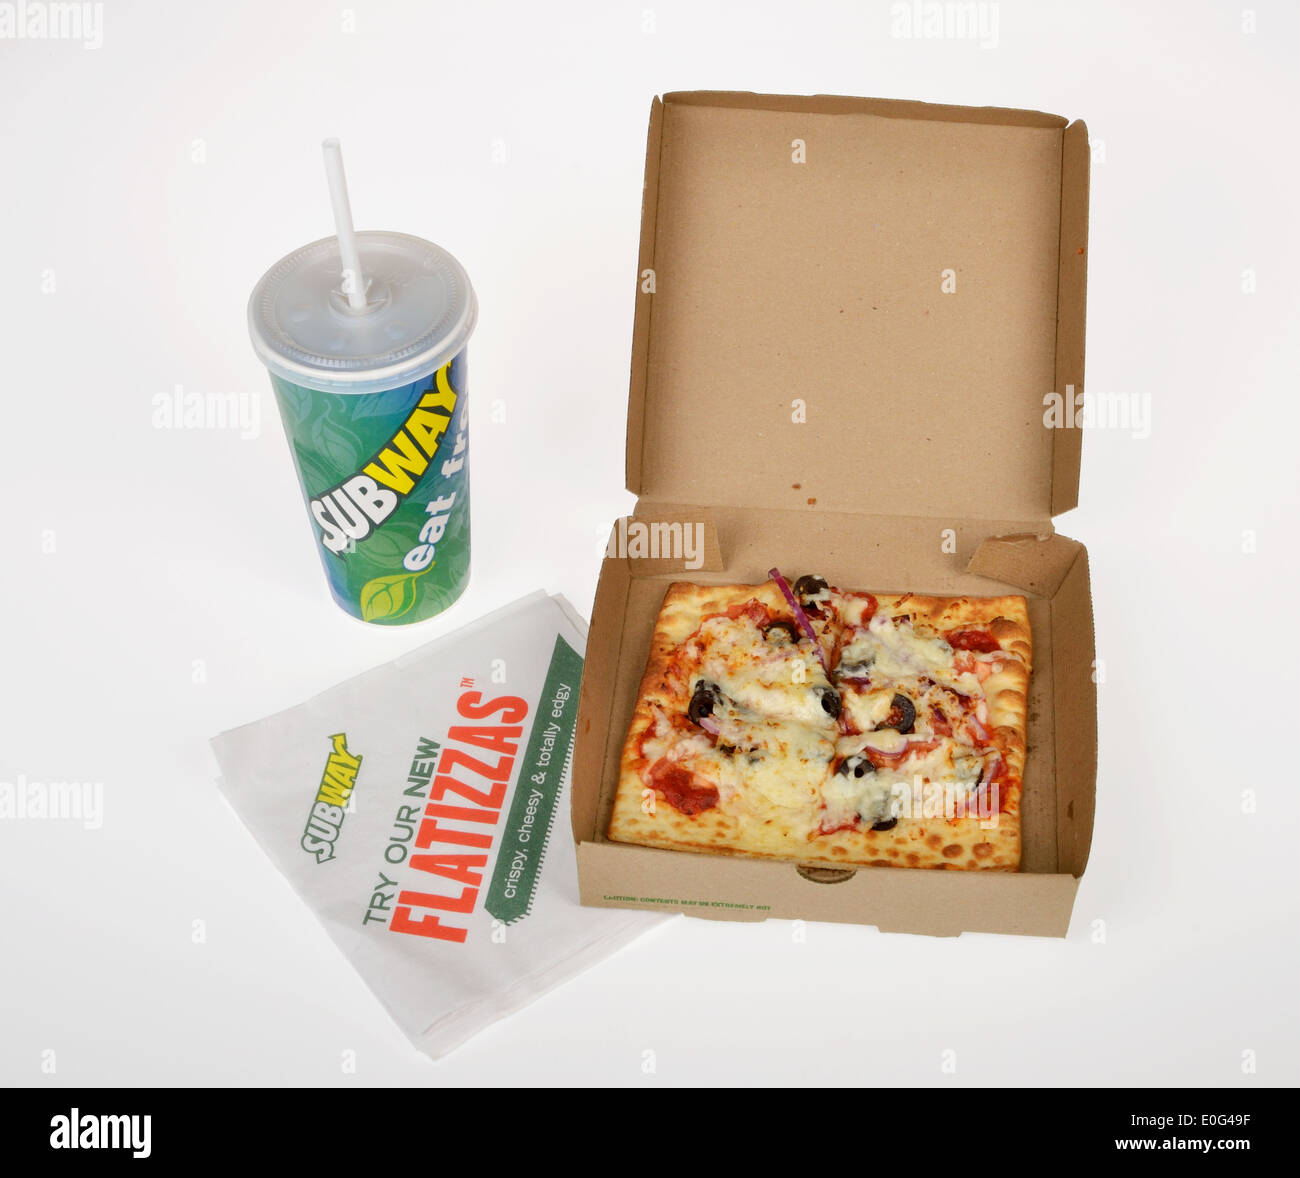 La metropolitana di fast food piazza flatizza pizza con condimenti vegetali in cartone estrarre la scatola su sfondo bianco. Stati Uniti d'America Foto Stock